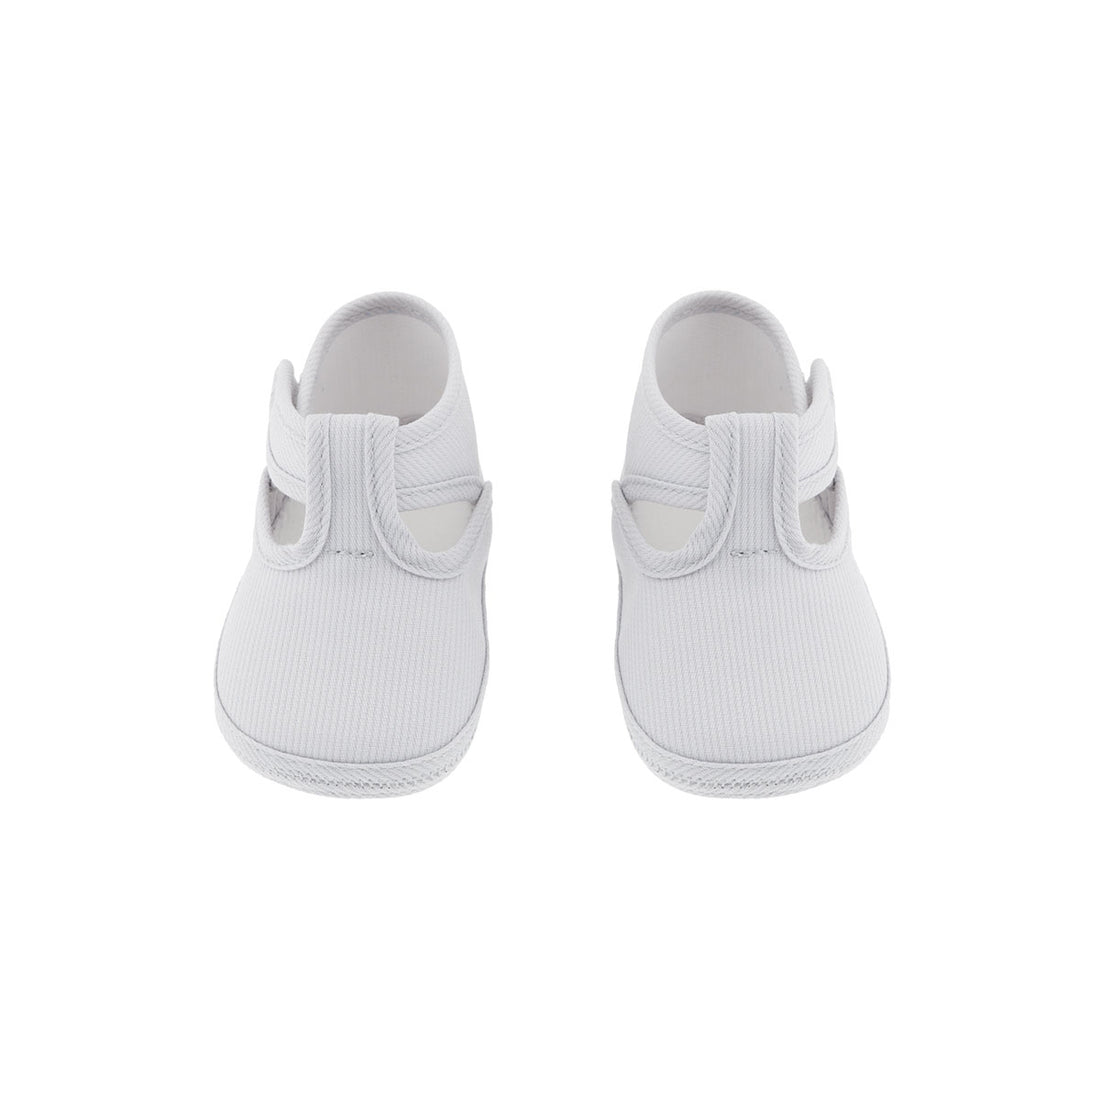 r&j-cambrass-sa-summer-baby-shoes-323-grey- (2)